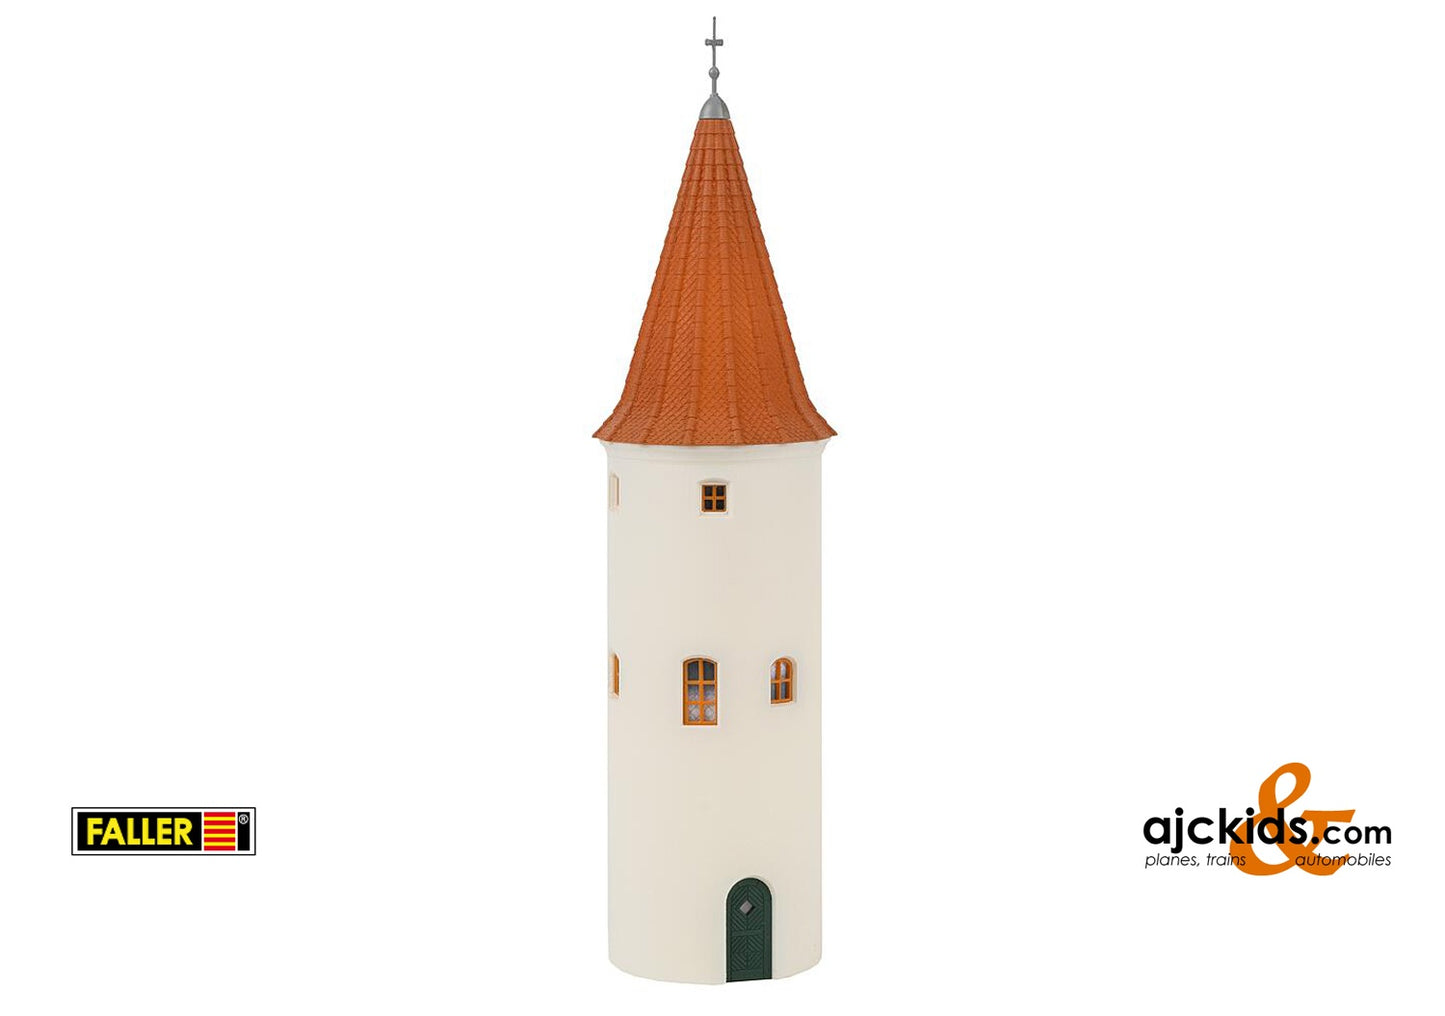 Faller 130822 - Rapunzel tower